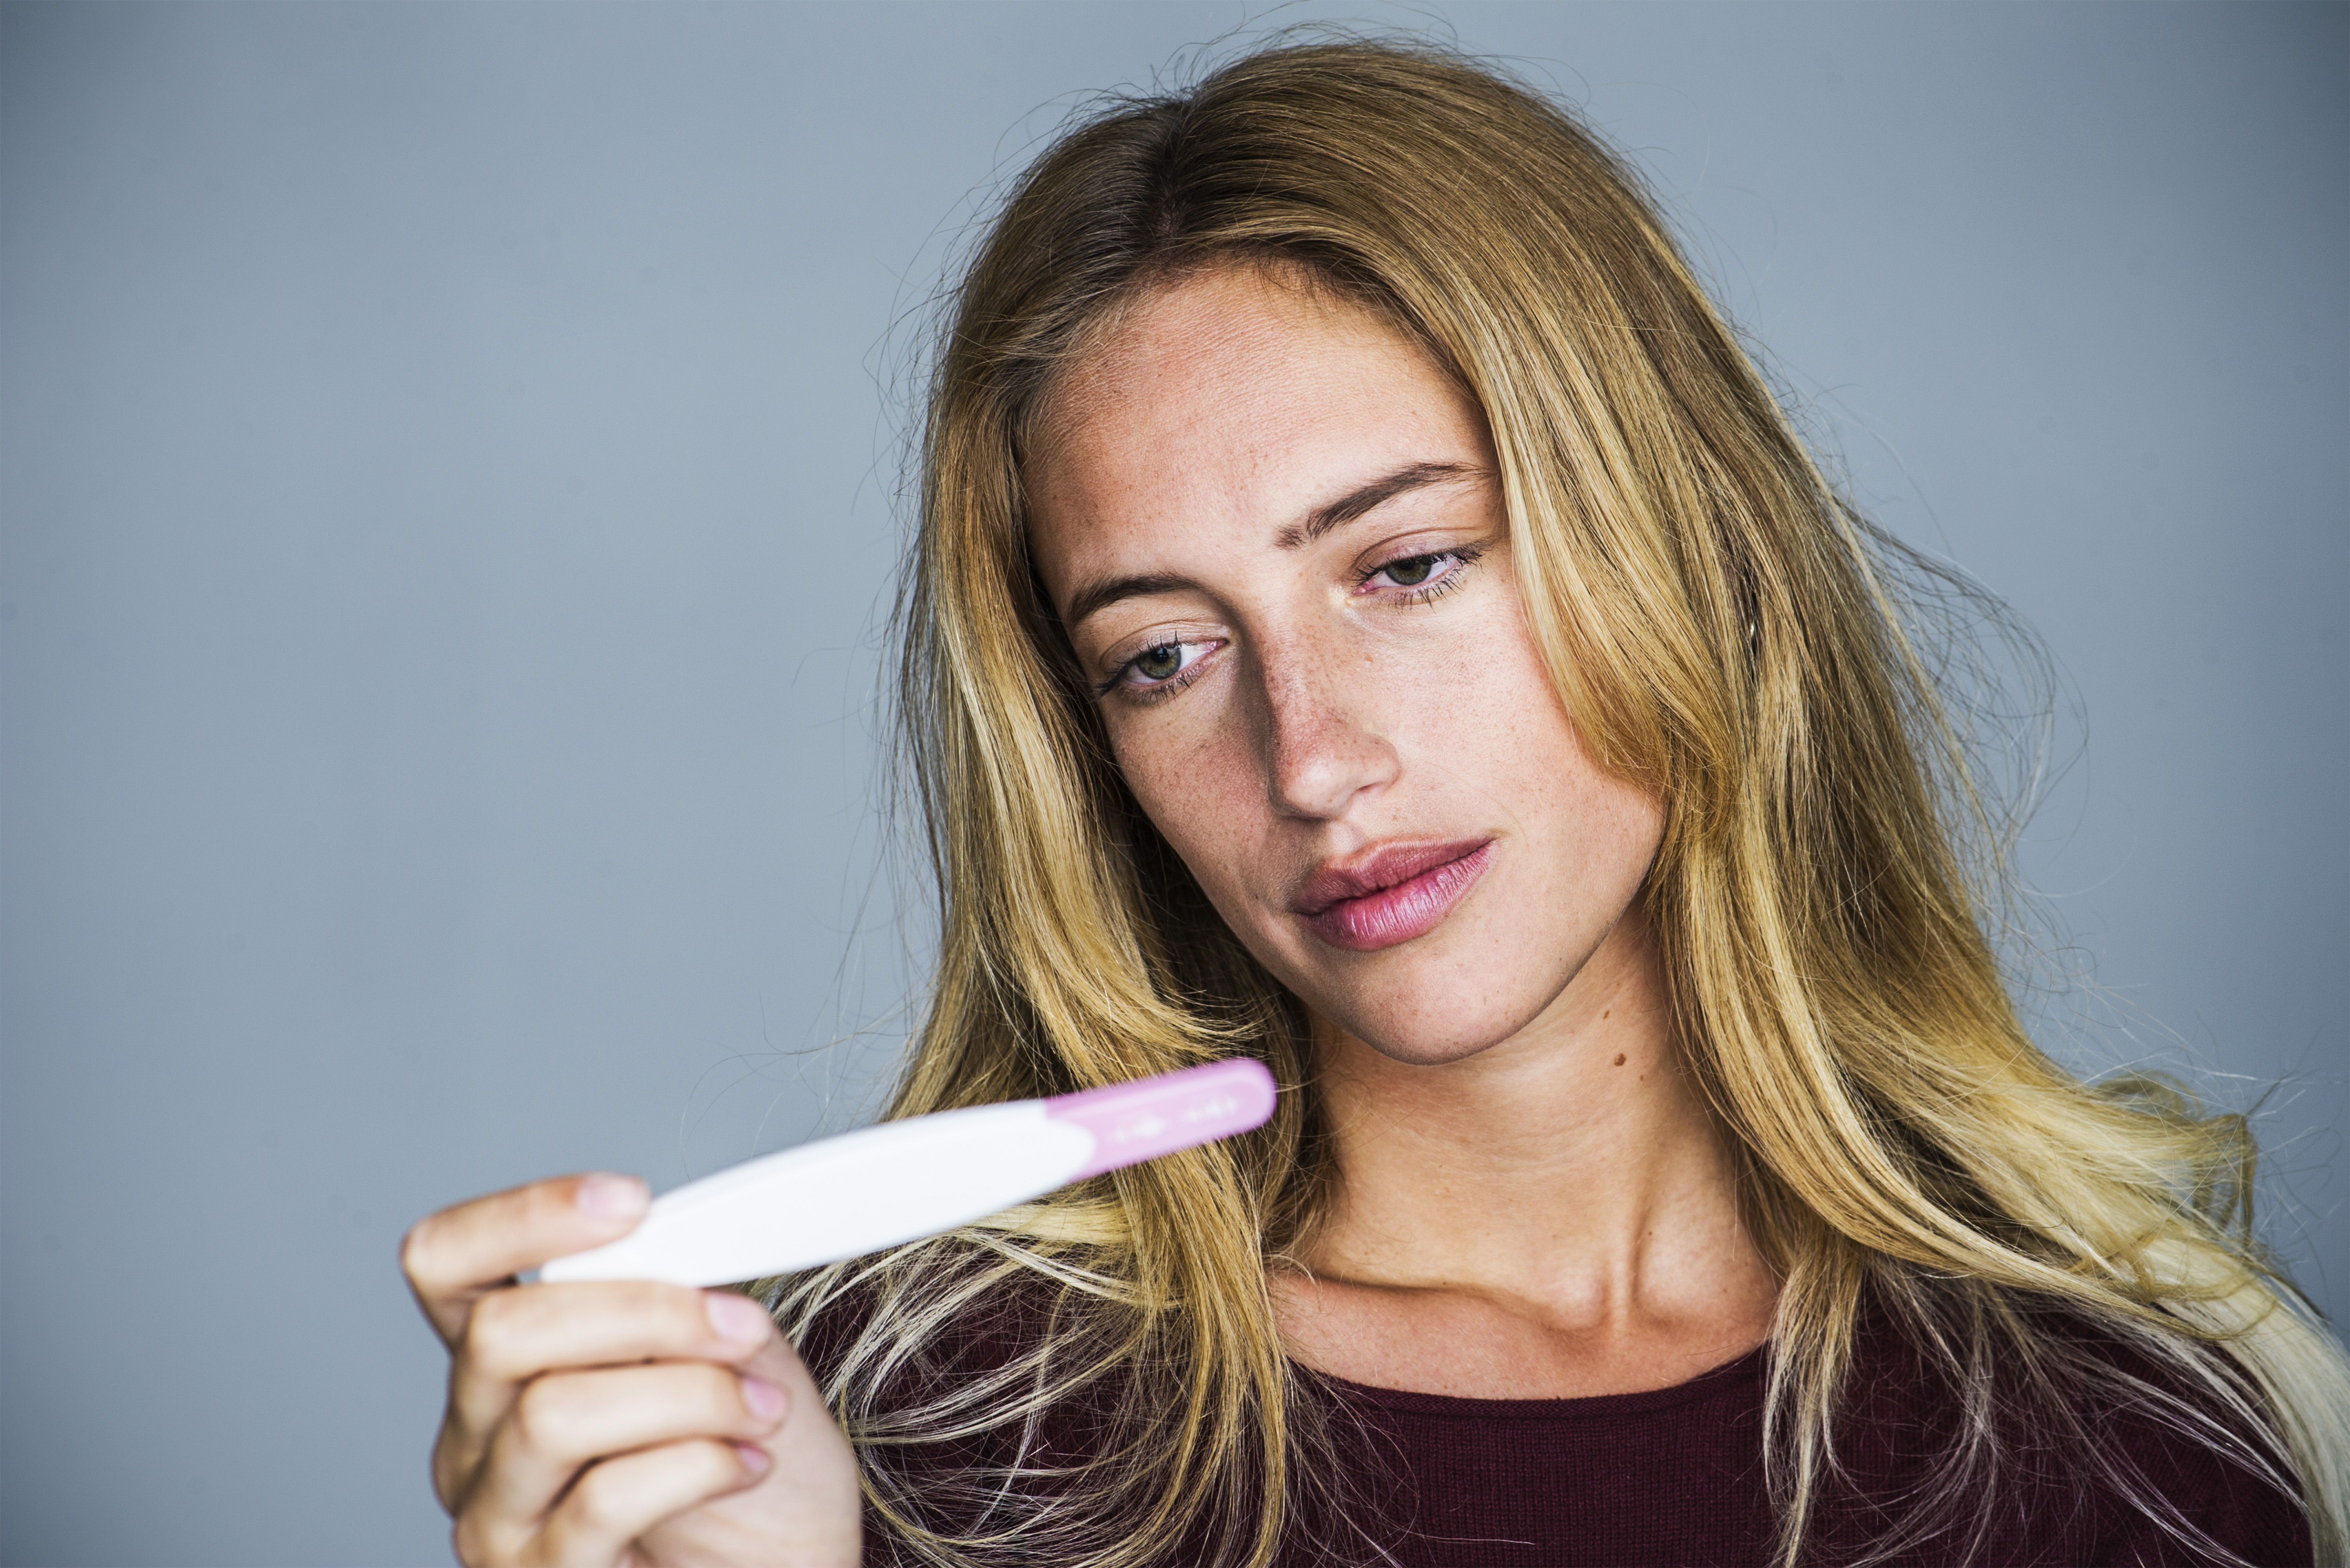 Jeune femme regardant un test de grossesse avec une expression déçue | Source : Getty Images